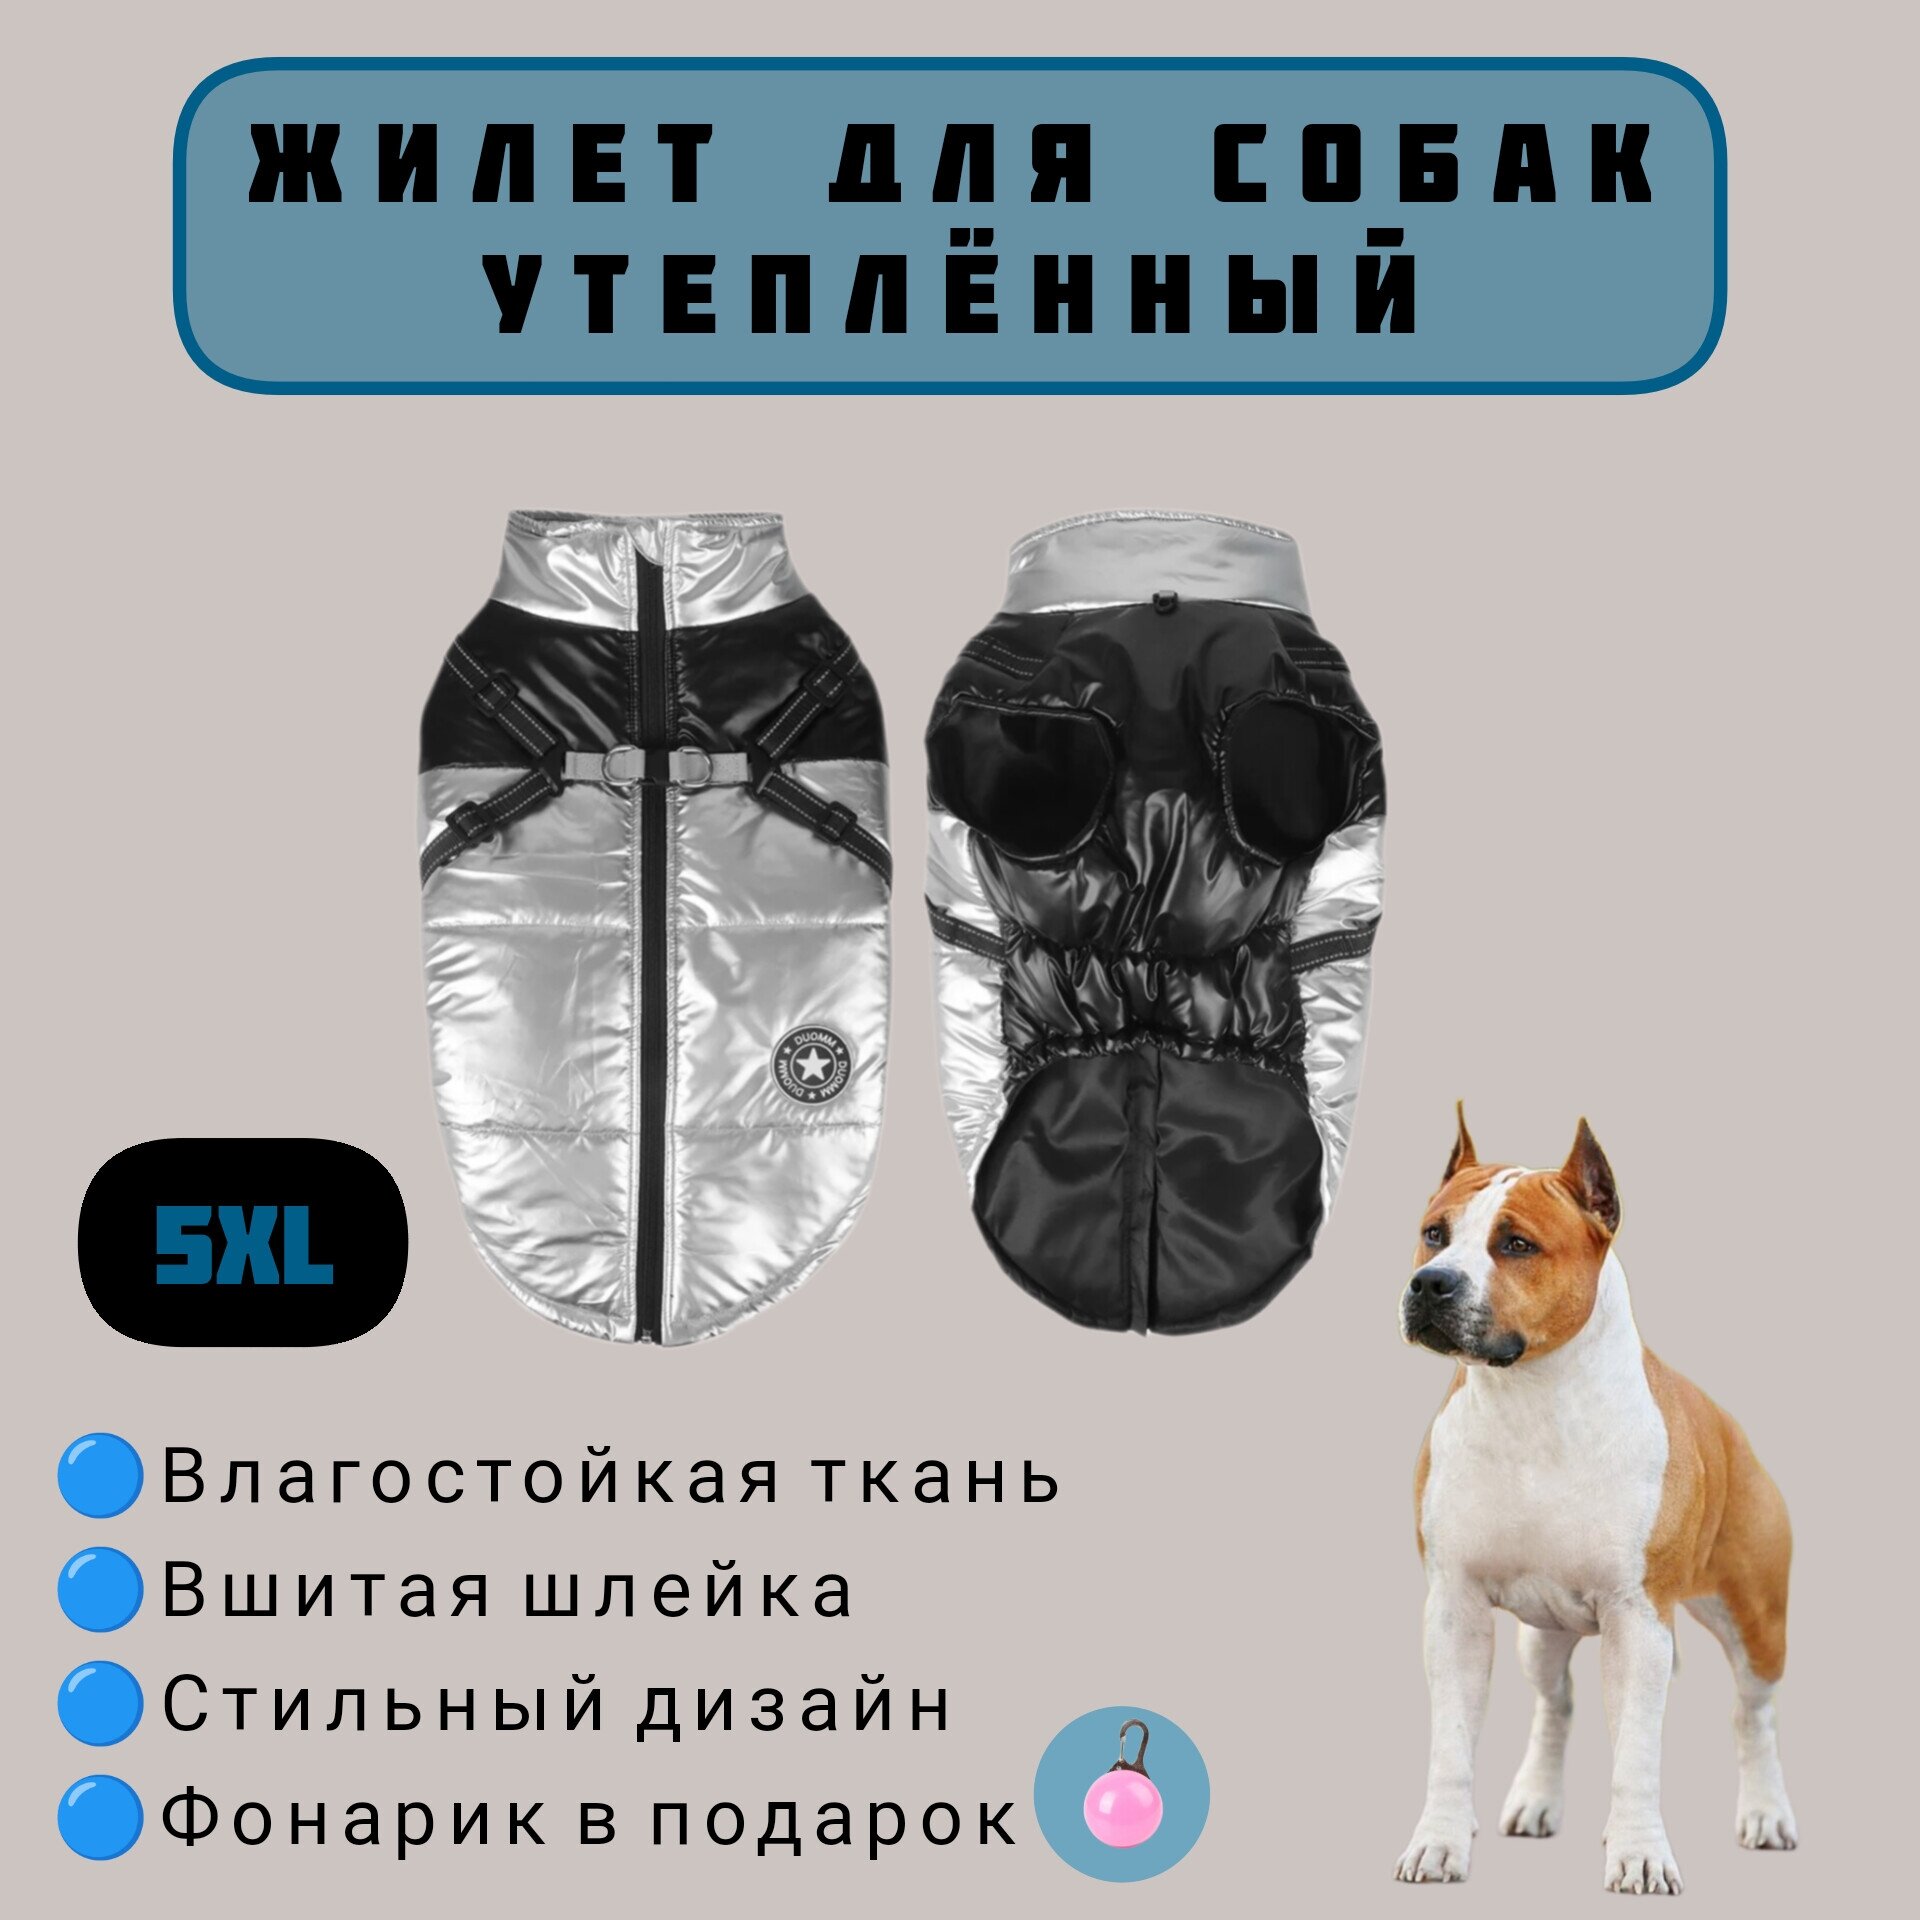 Жилет зимний для собак крупных пород, черный/серебристый, 5XL